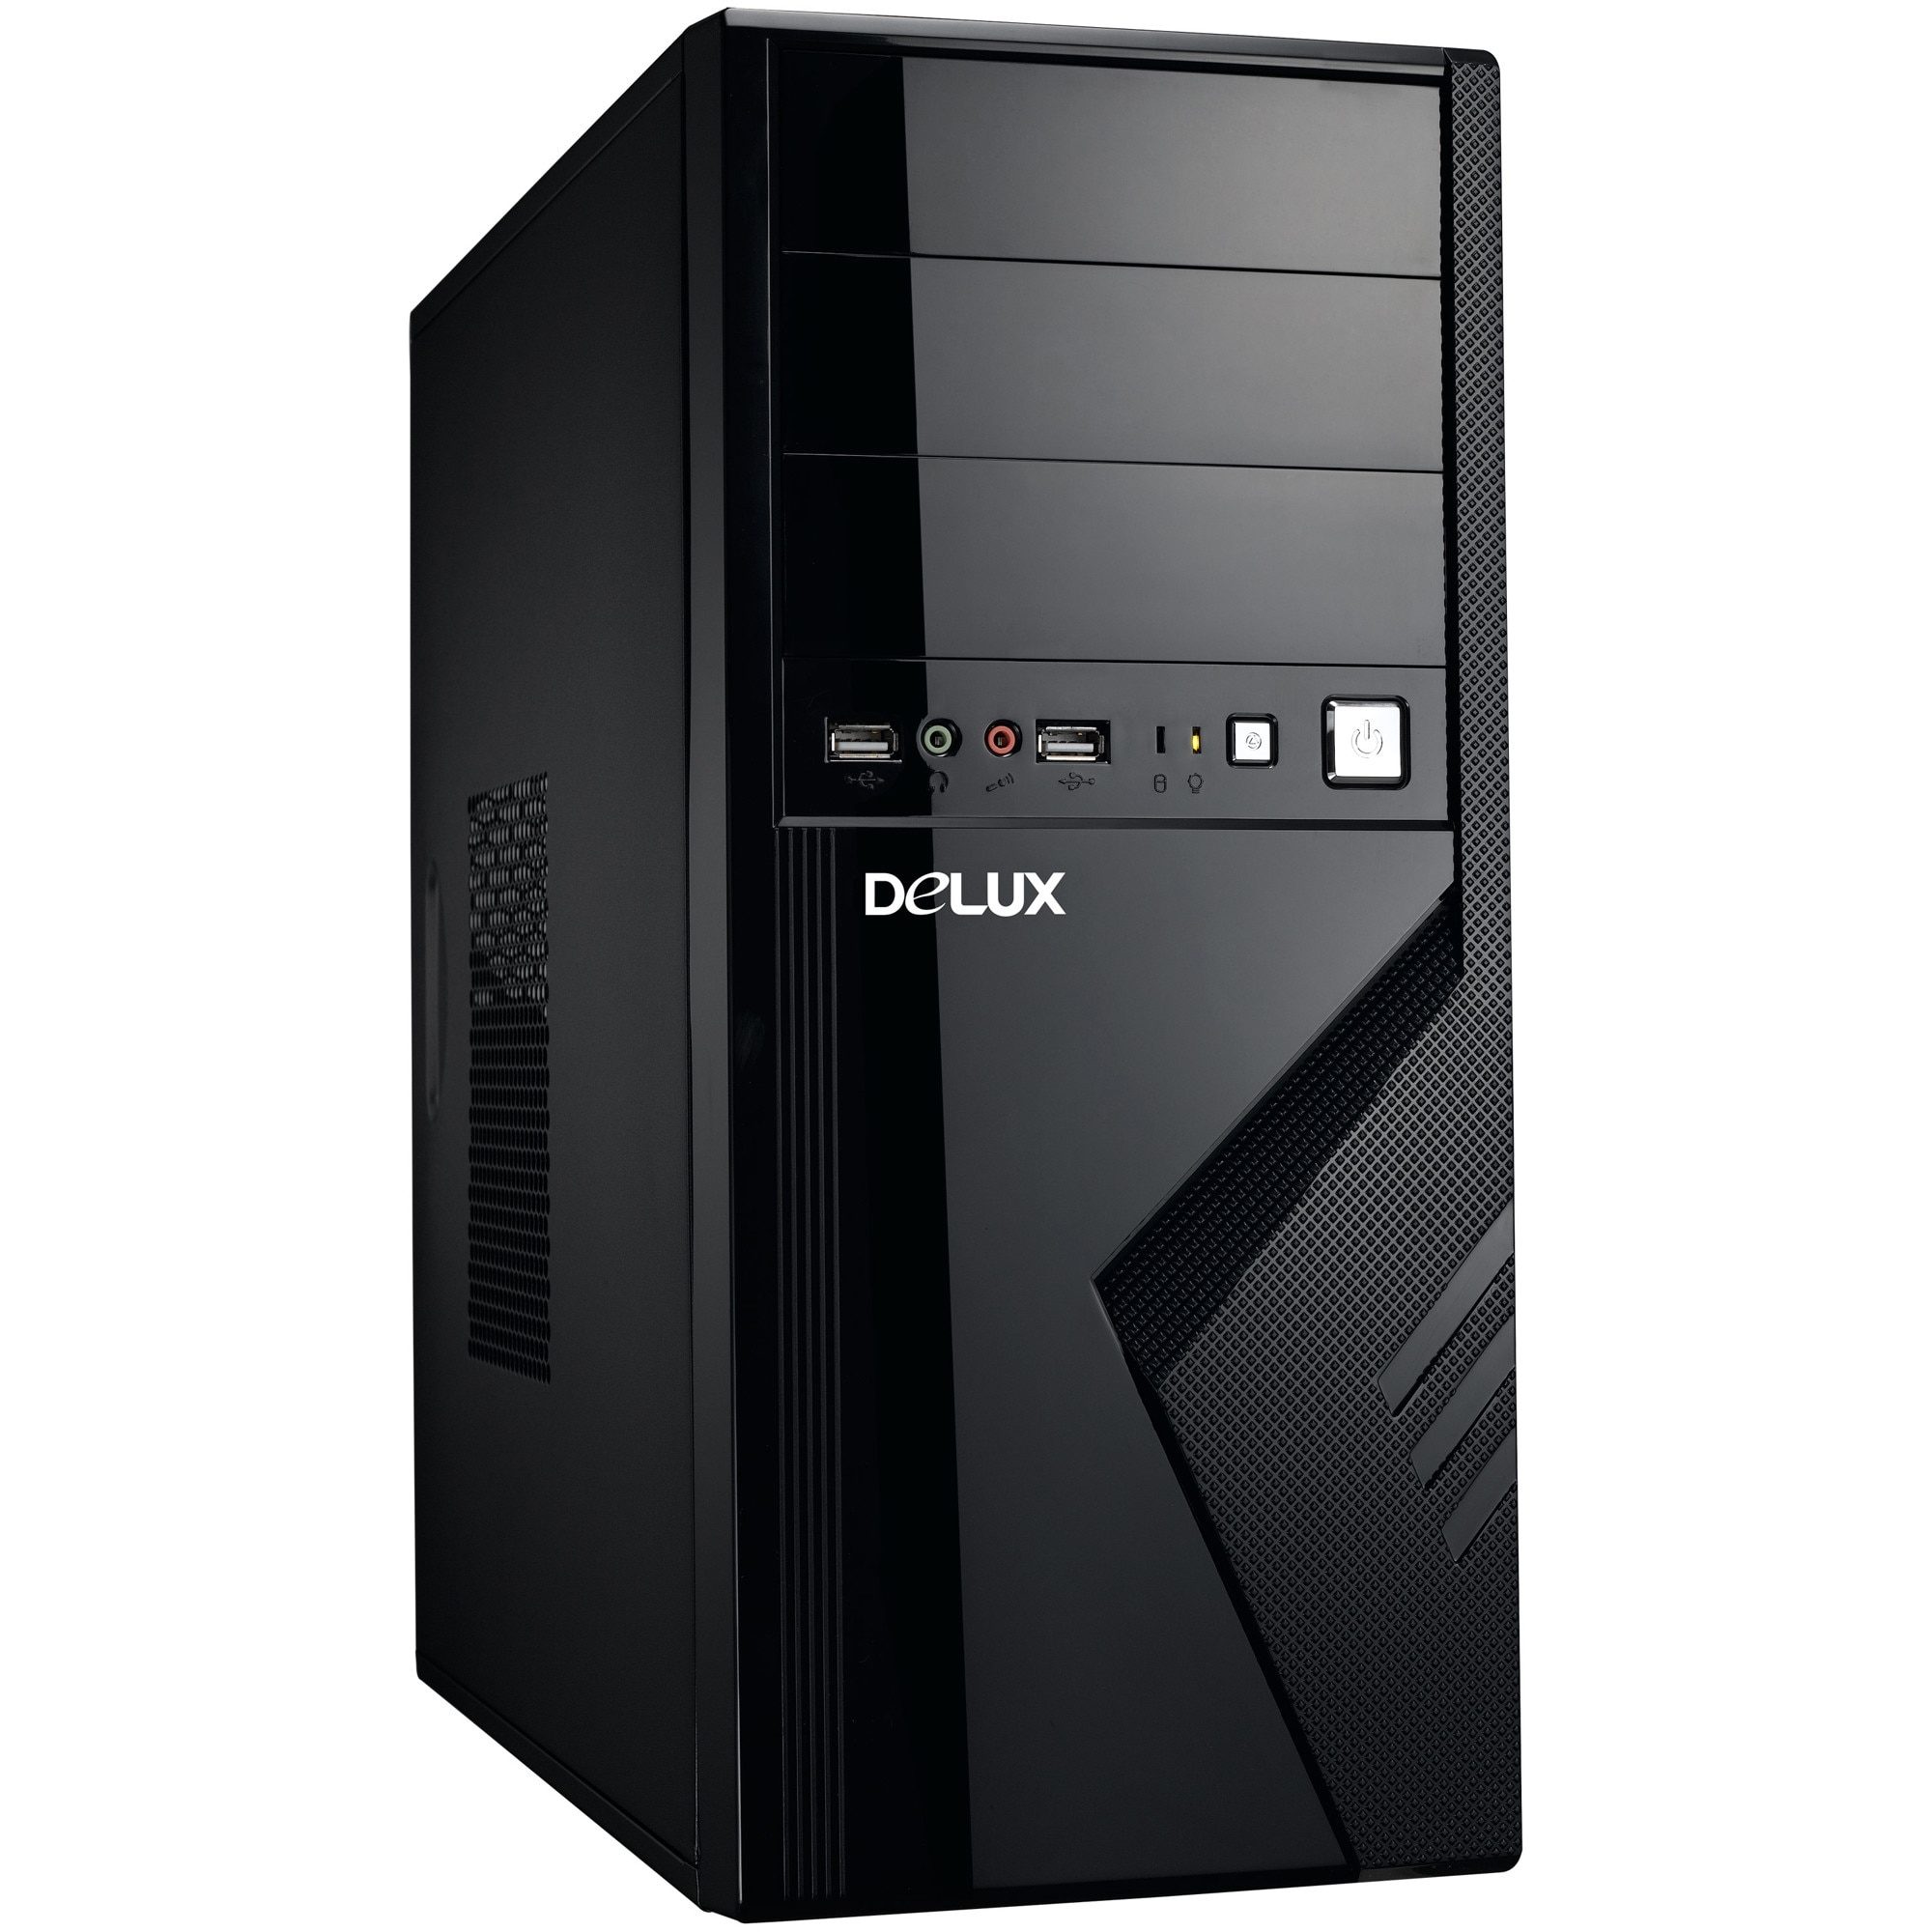 Недорогой процессор для игр. Корпус Delux DLC-dc875 500w. Delux ATX DLC-dw301. Компьютерный корпус Delux DLC-mt875 350w Black. Компьютерный корпус Delux DLC-mt875 400w Black.